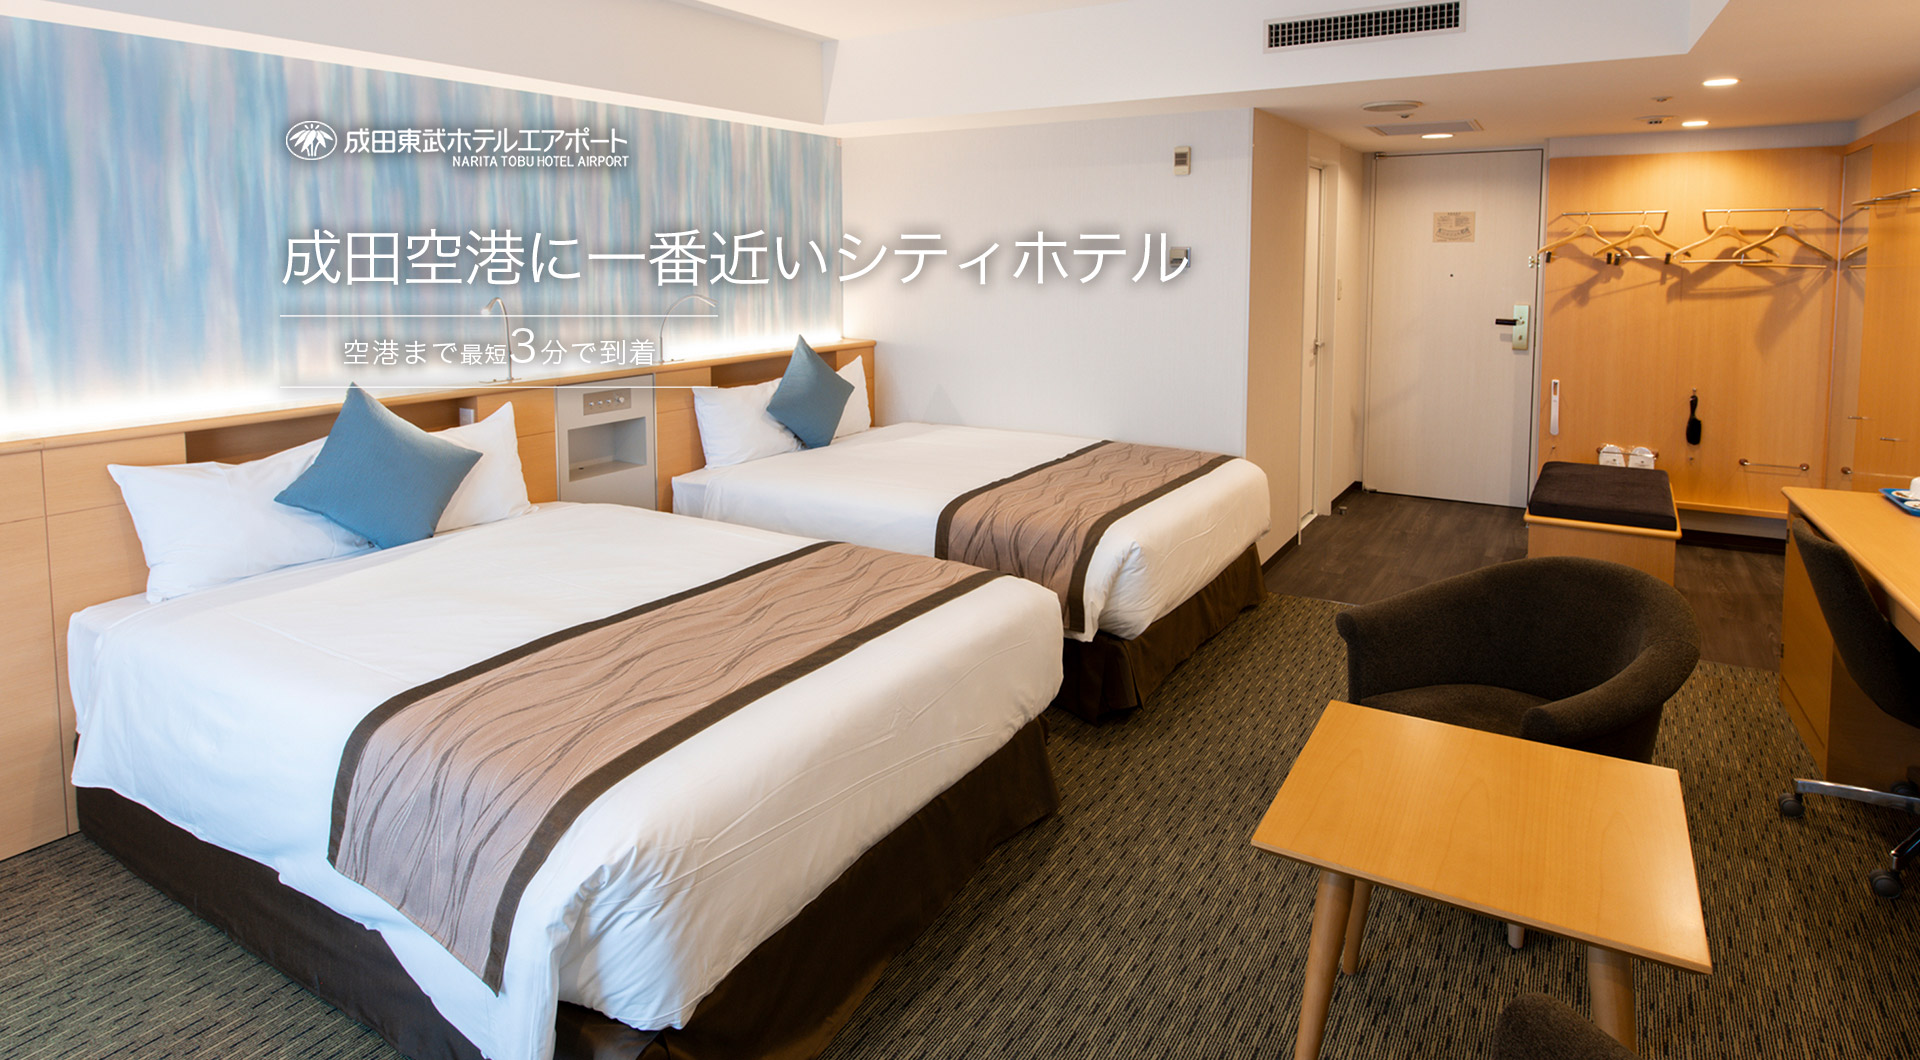 公式 成田東武ホテルエアポート 成田空港に一番近いホテル 東京スカイツリー オフィシャルホテル